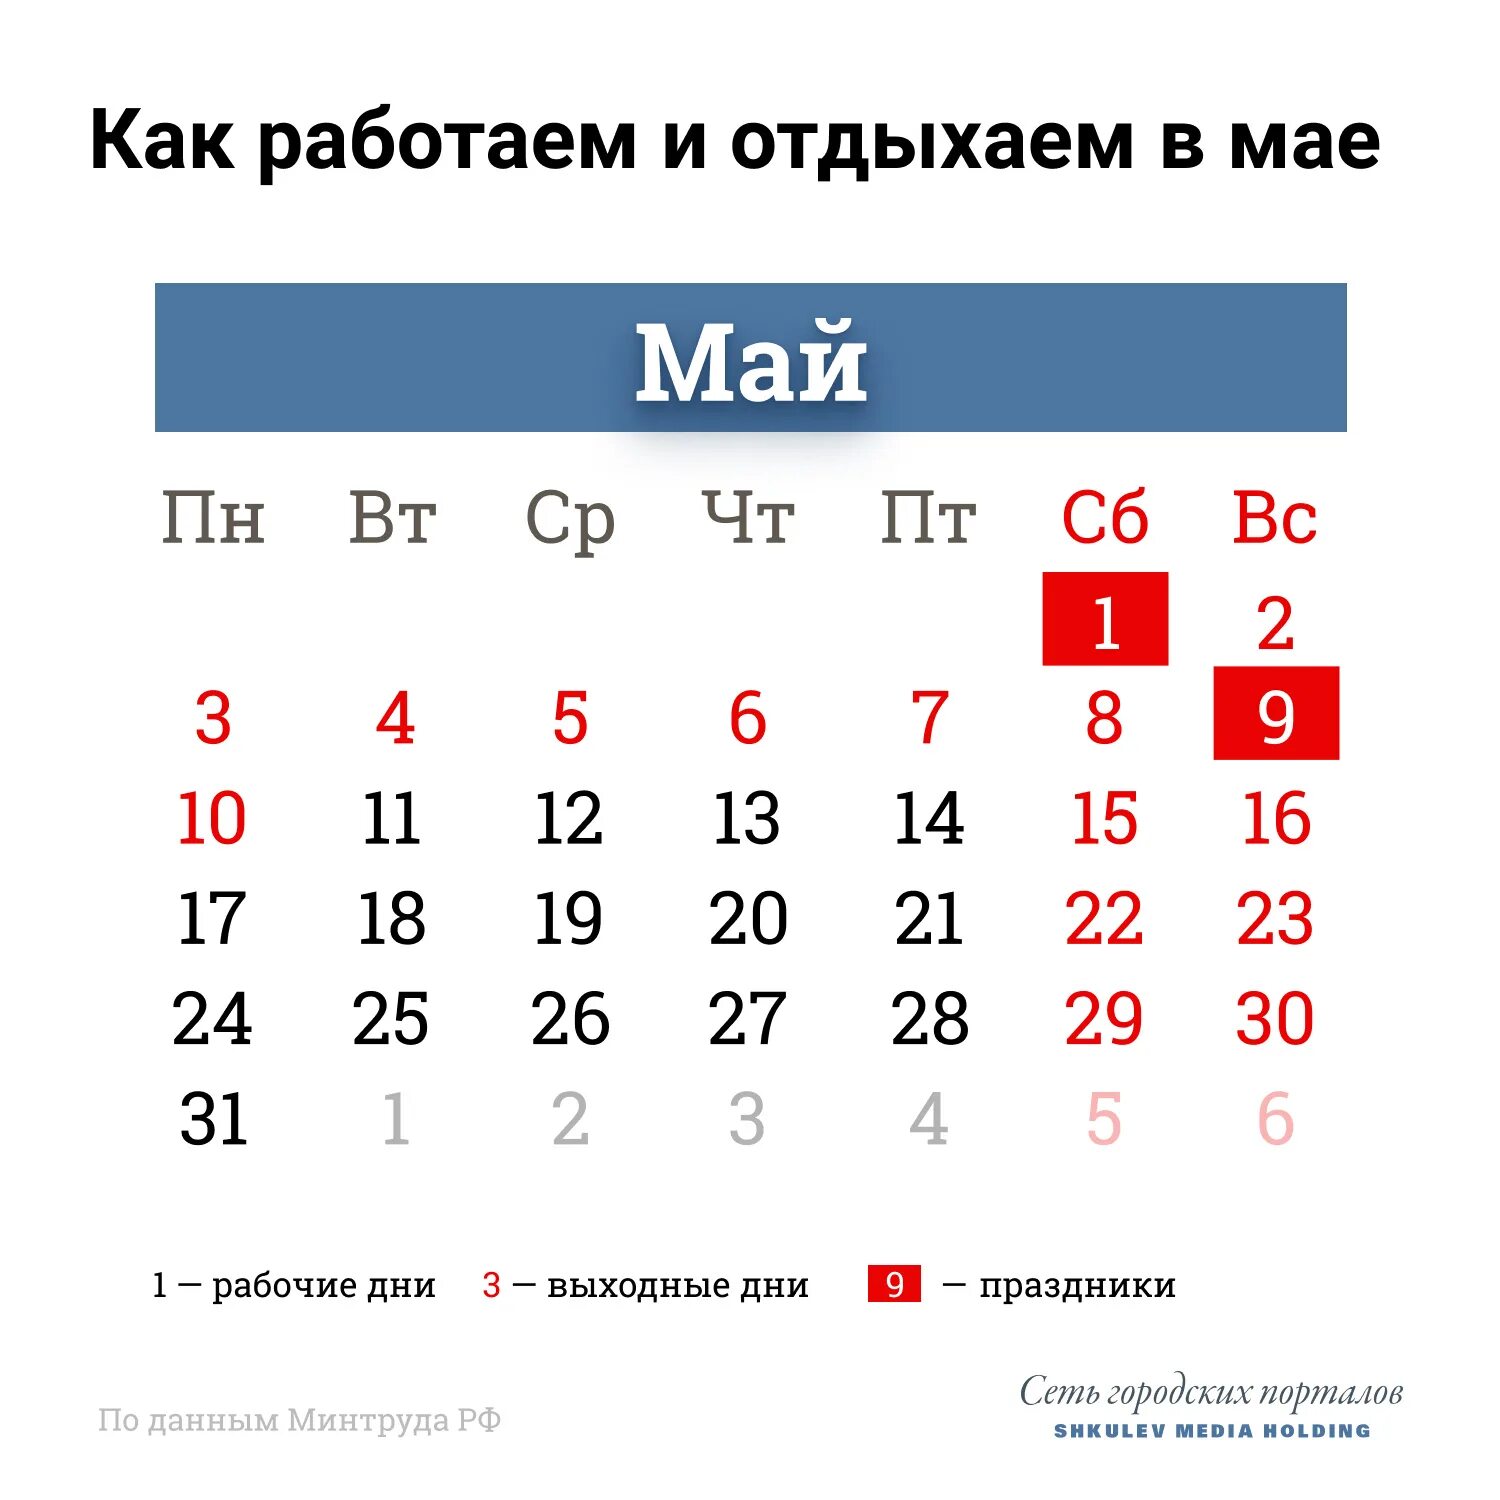 4 мая выходной или рабочий день. Праздничные дни в мае 2021 года в России. Выходные в мае. Майсеип праздник календарь. Майские праздники rfktylfh,.